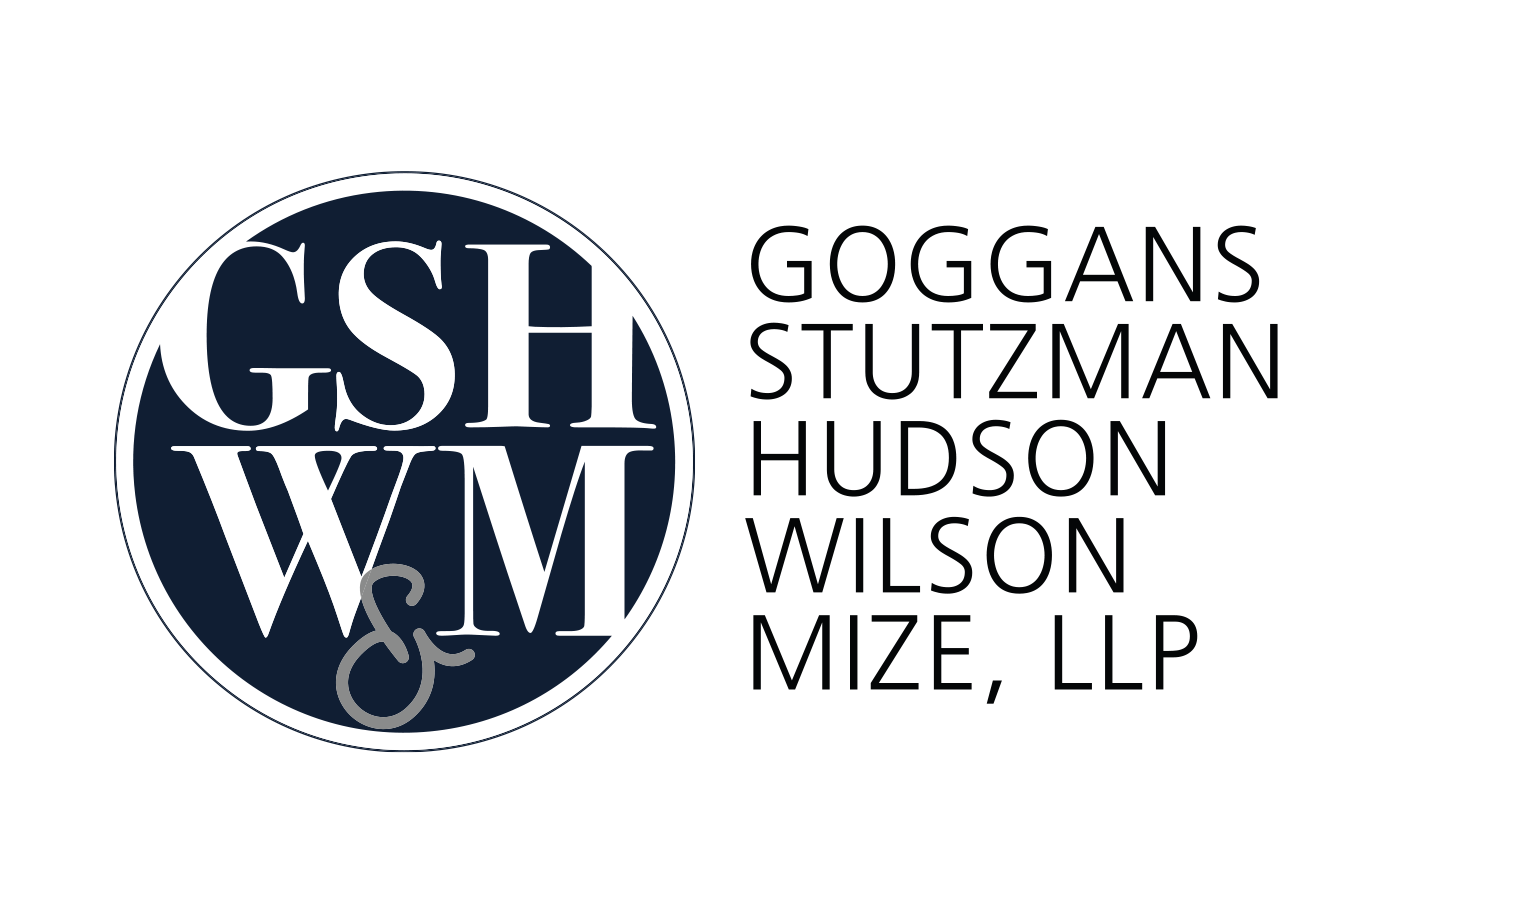 Goggans, Stutzman, Hudson, Wilson, and Mize, LLP.